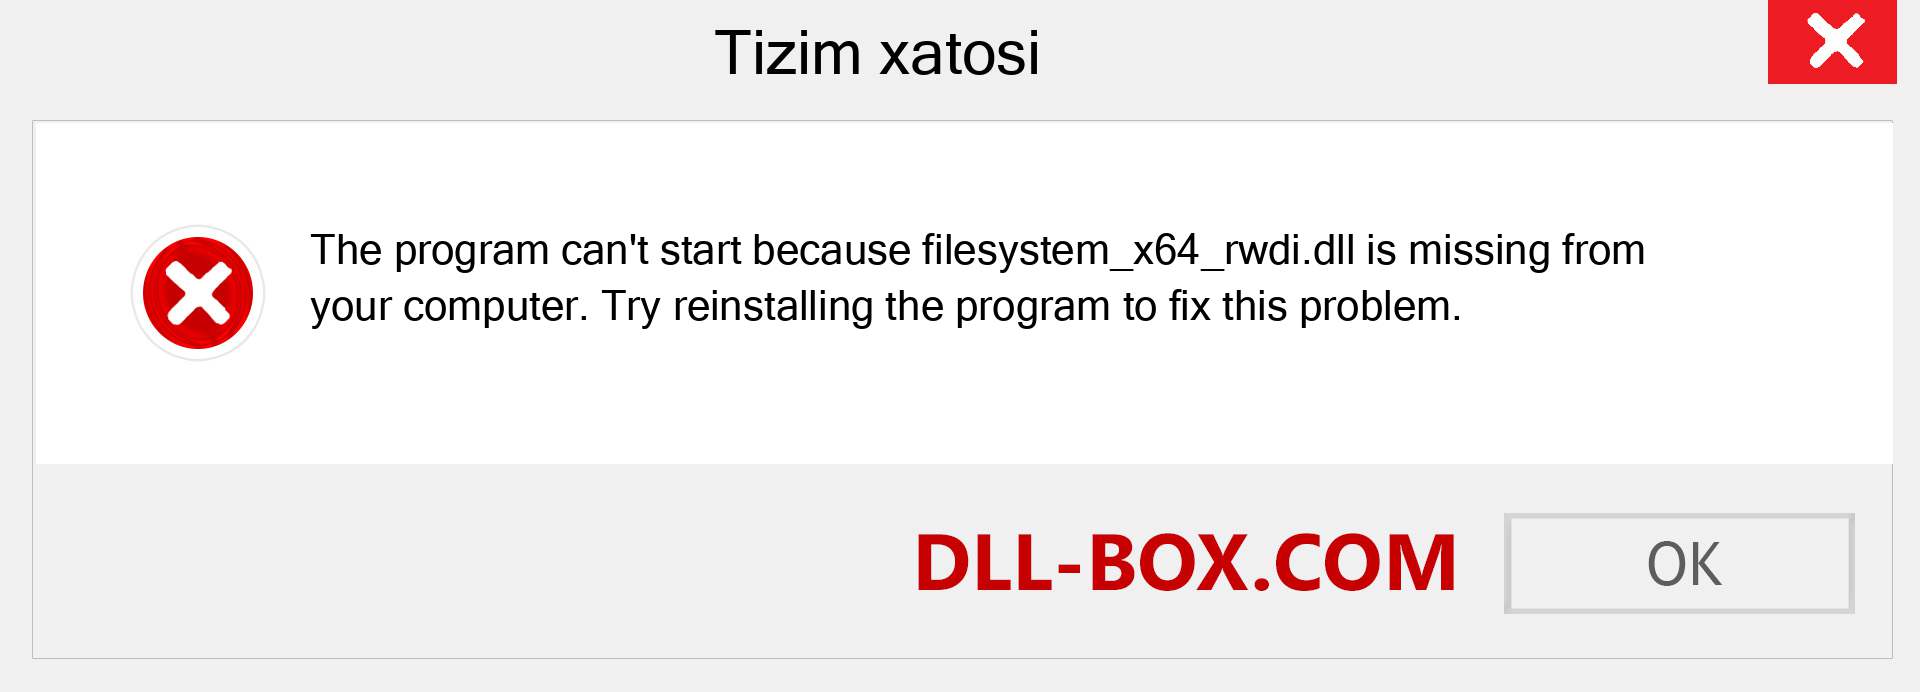 filesystem_x64_rwdi.dll fayli yo'qolganmi?. Windows 7, 8, 10 uchun yuklab olish - Windowsda filesystem_x64_rwdi dll etishmayotgan xatoni tuzating, rasmlar, rasmlar